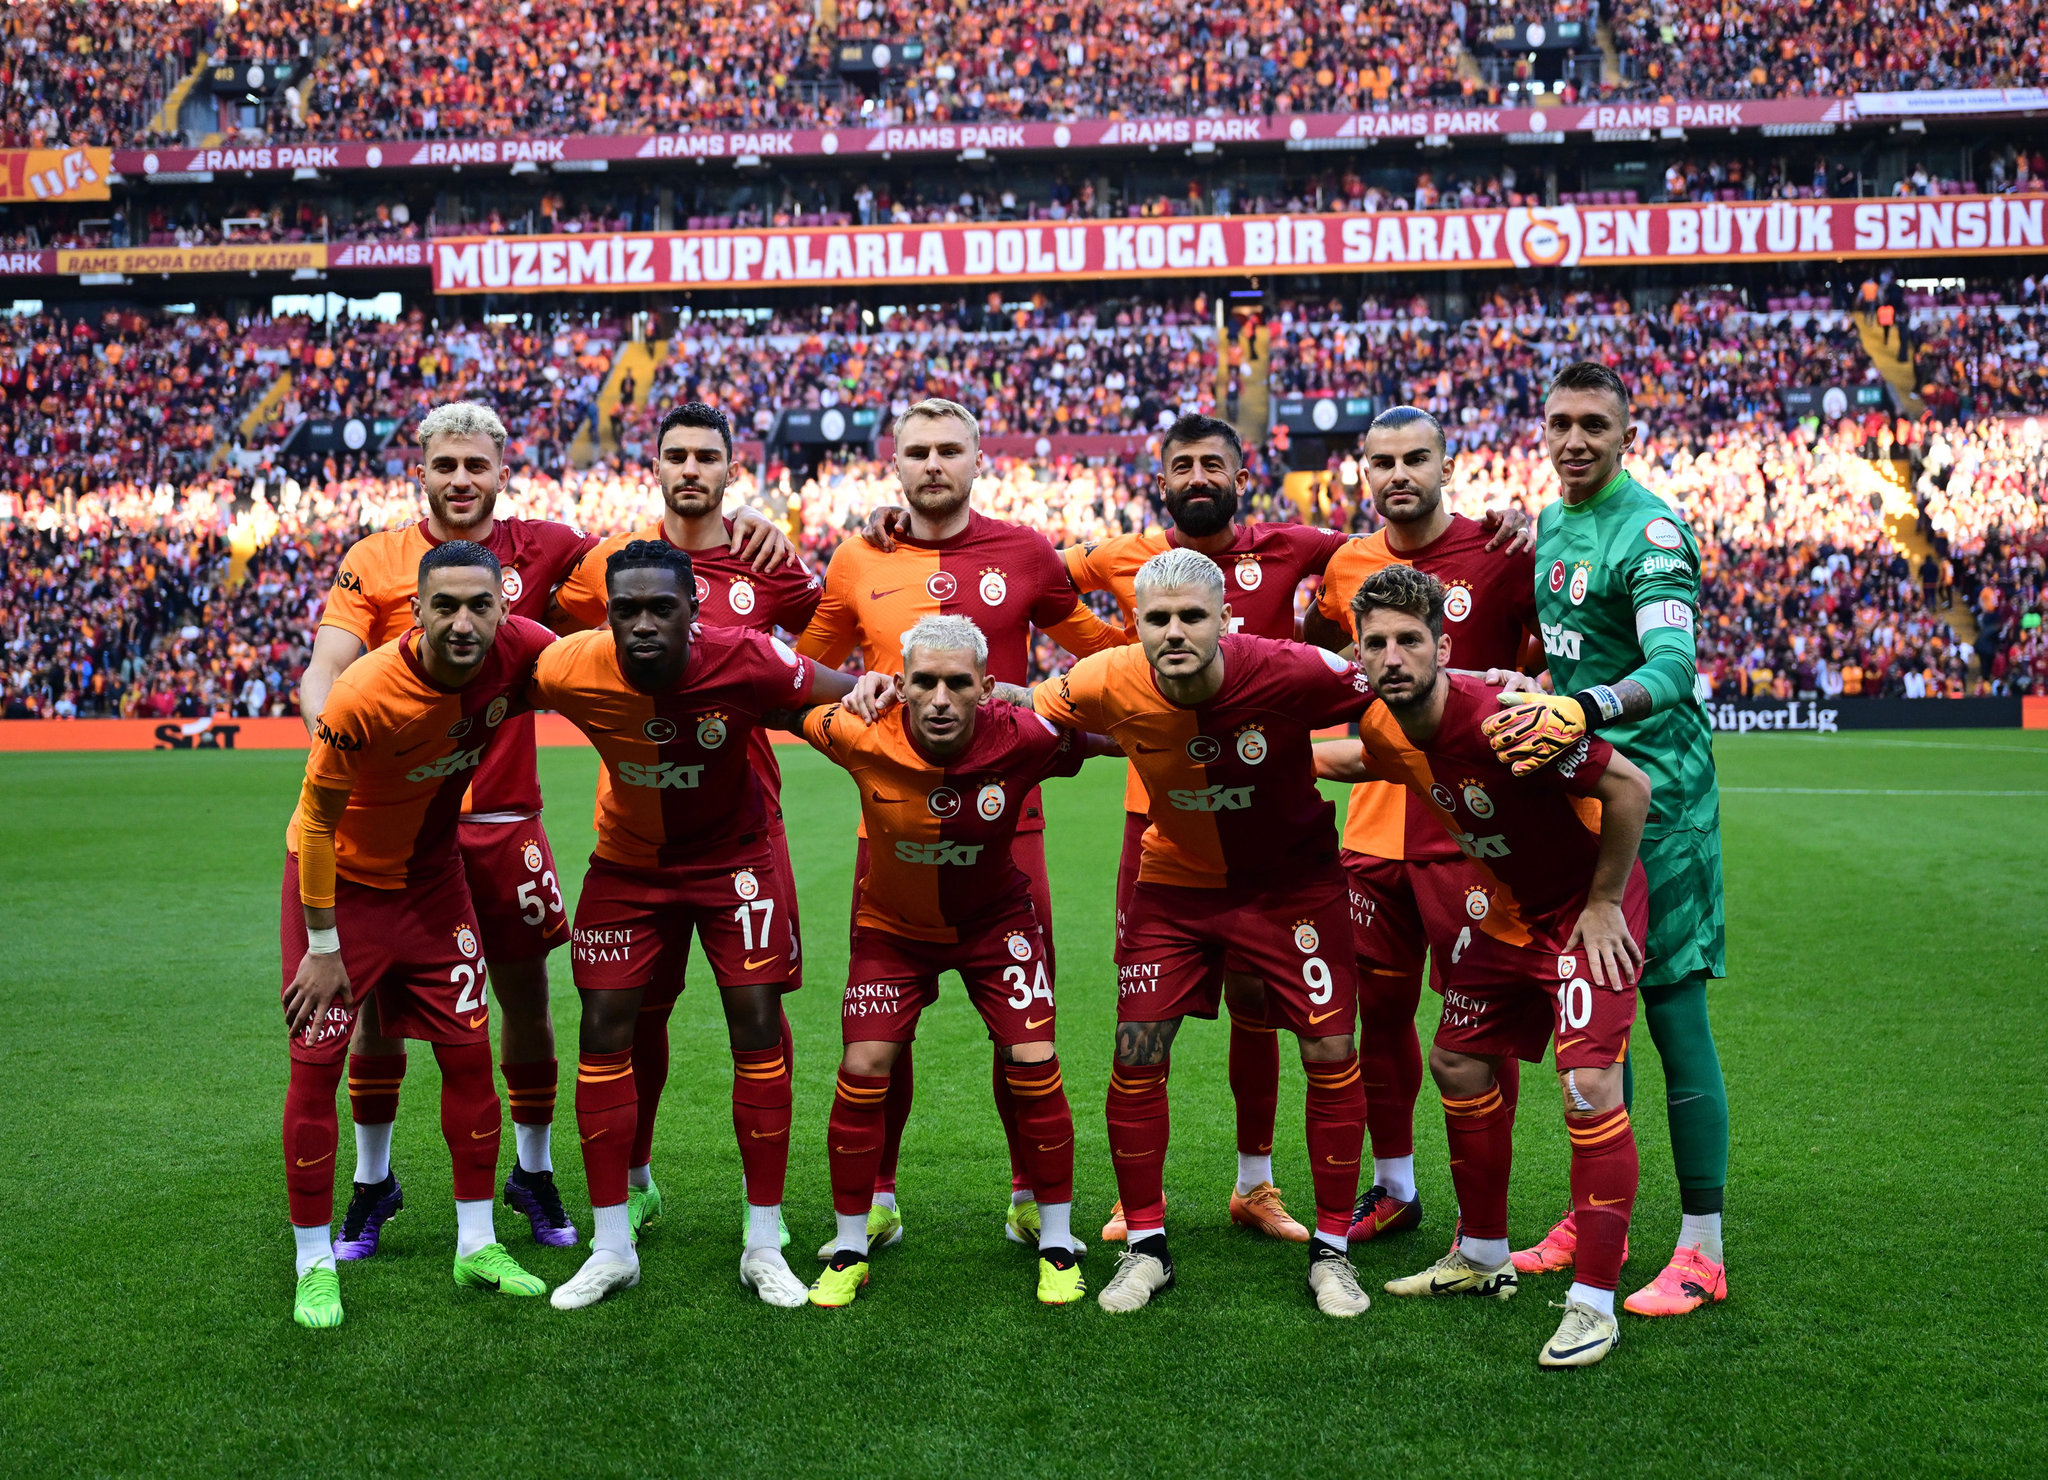 TRANSFER HABERİ: Galatasaray’da beklenen veda gerçekleşiyor! Menajeri 2 takımla görüştü